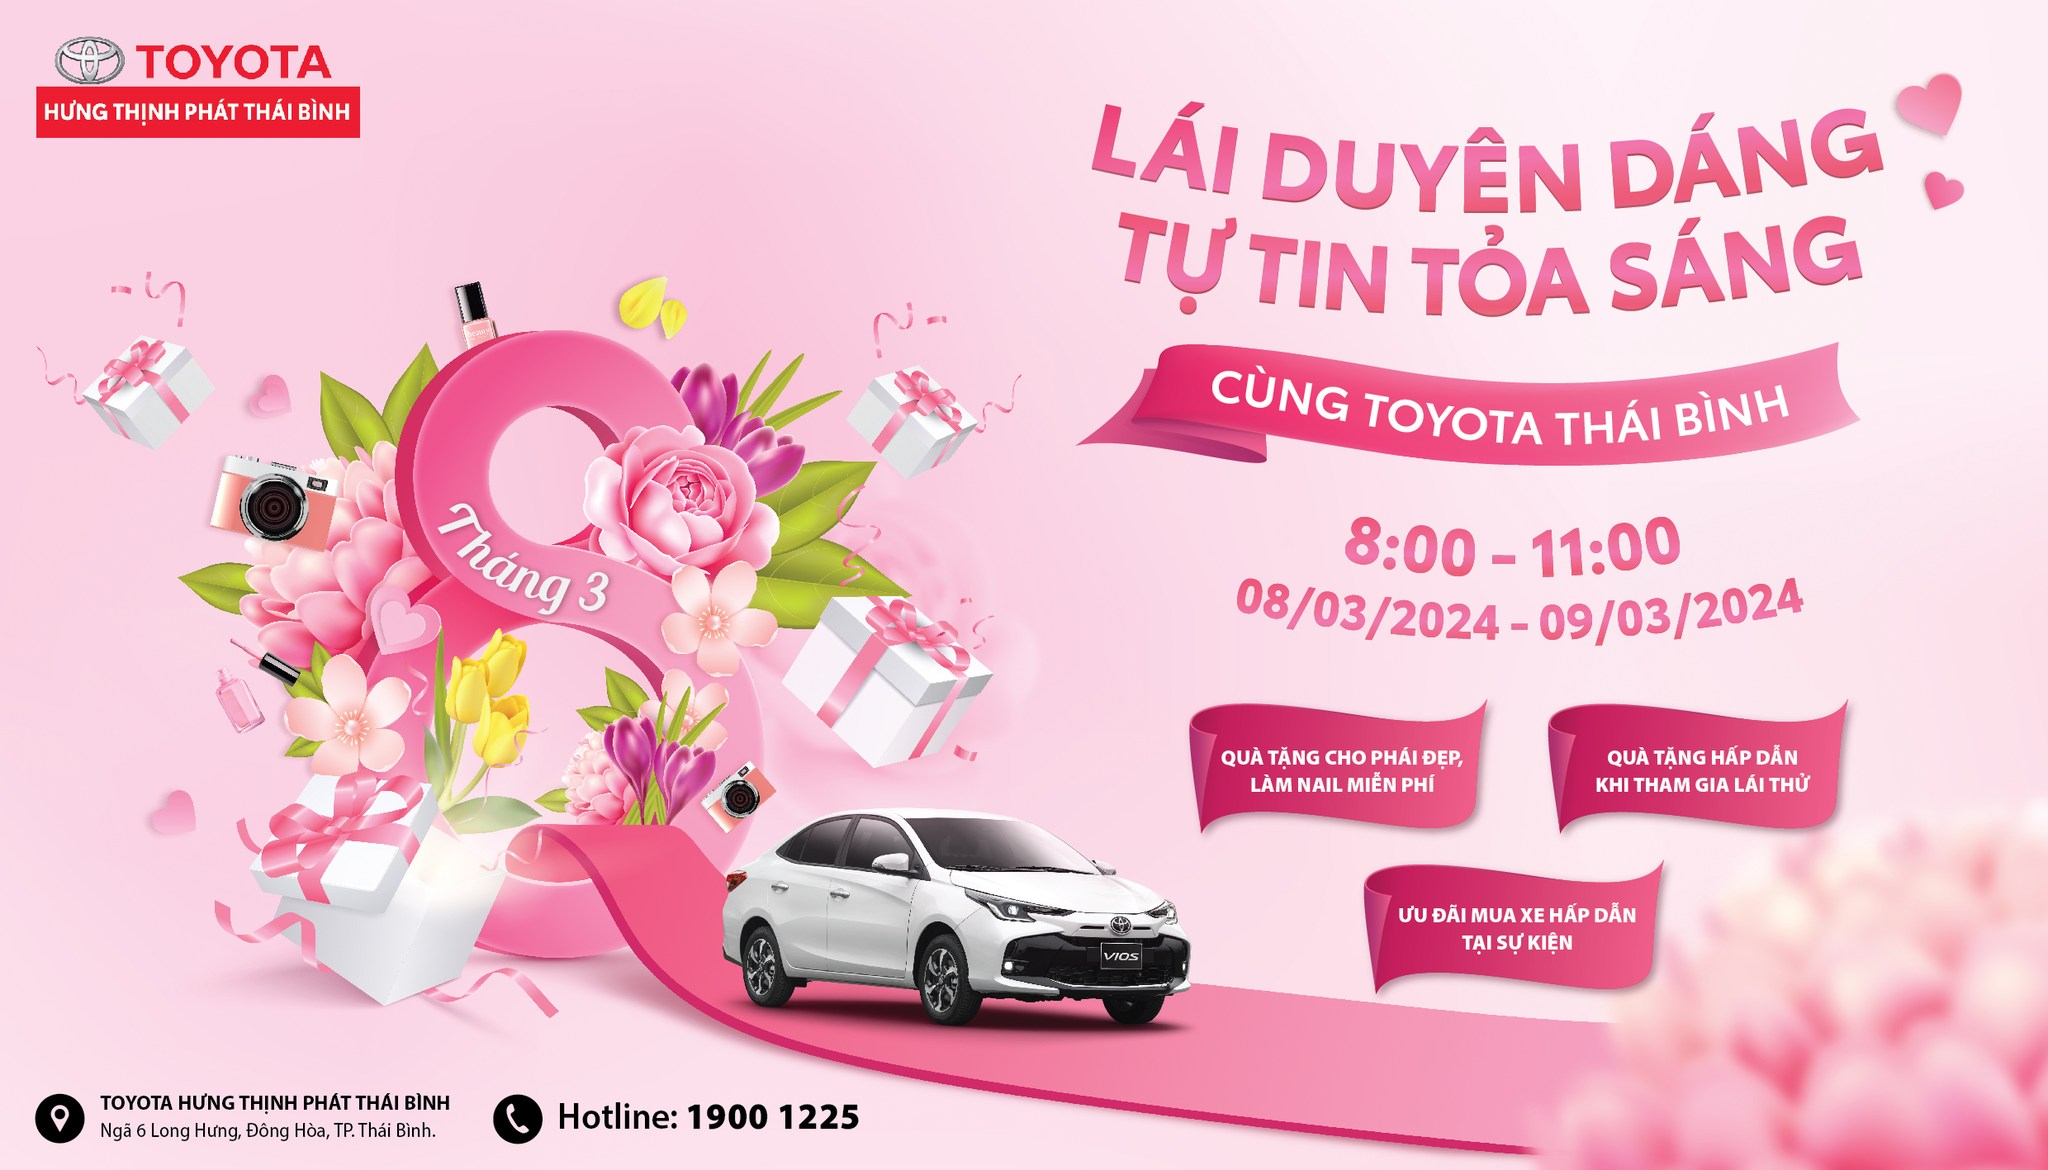 🌸🚗 Chào mừng Ngày Quốc Tế Phụ Nữ với sự kiện lái thử đặc biệt “𝑳𝑨́𝑰 𝑫𝑼𝒀𝑬̂𝑵 𝑫𝑨́𝑵𝑮 – 𝑻𝑼̛̣ 𝑻𝑰𝑵 𝑻𝑶̉𝑨 𝑺𝑨́𝑵𝑮” từ Toyota Hưng Thịnh Phát Thái Bình 🚗🌸